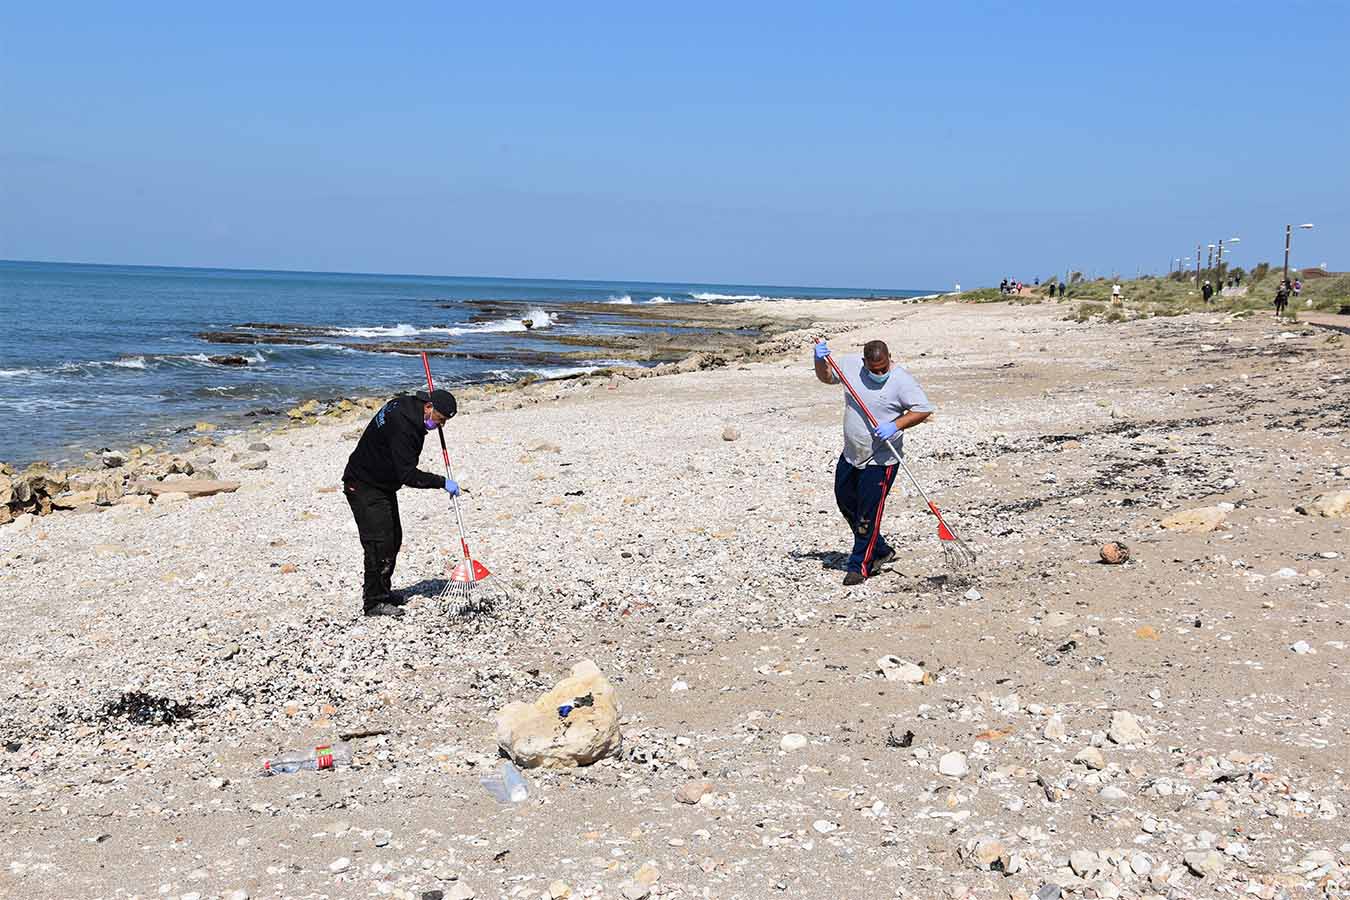 עלי ומנצור, קבלני משנה, מנקים את החוף בחיפה. הפיקוח העירוני מספק שקיות וכפפות (צילום: שי ניר)